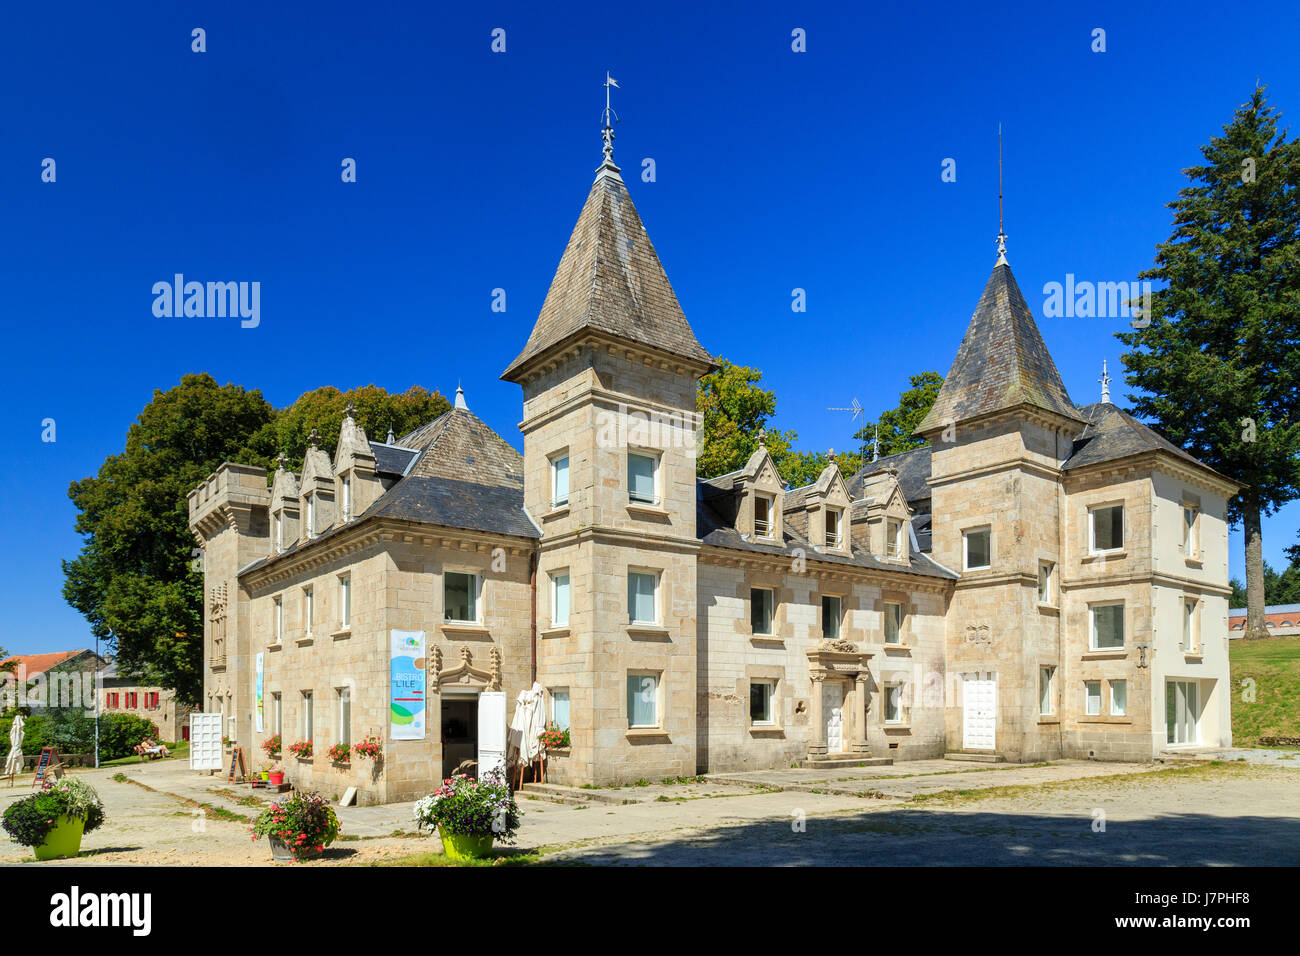 France, Creuse, Vassiviere lake, Beaumont du Lac, Vassiviere island, the castle Stock Photo